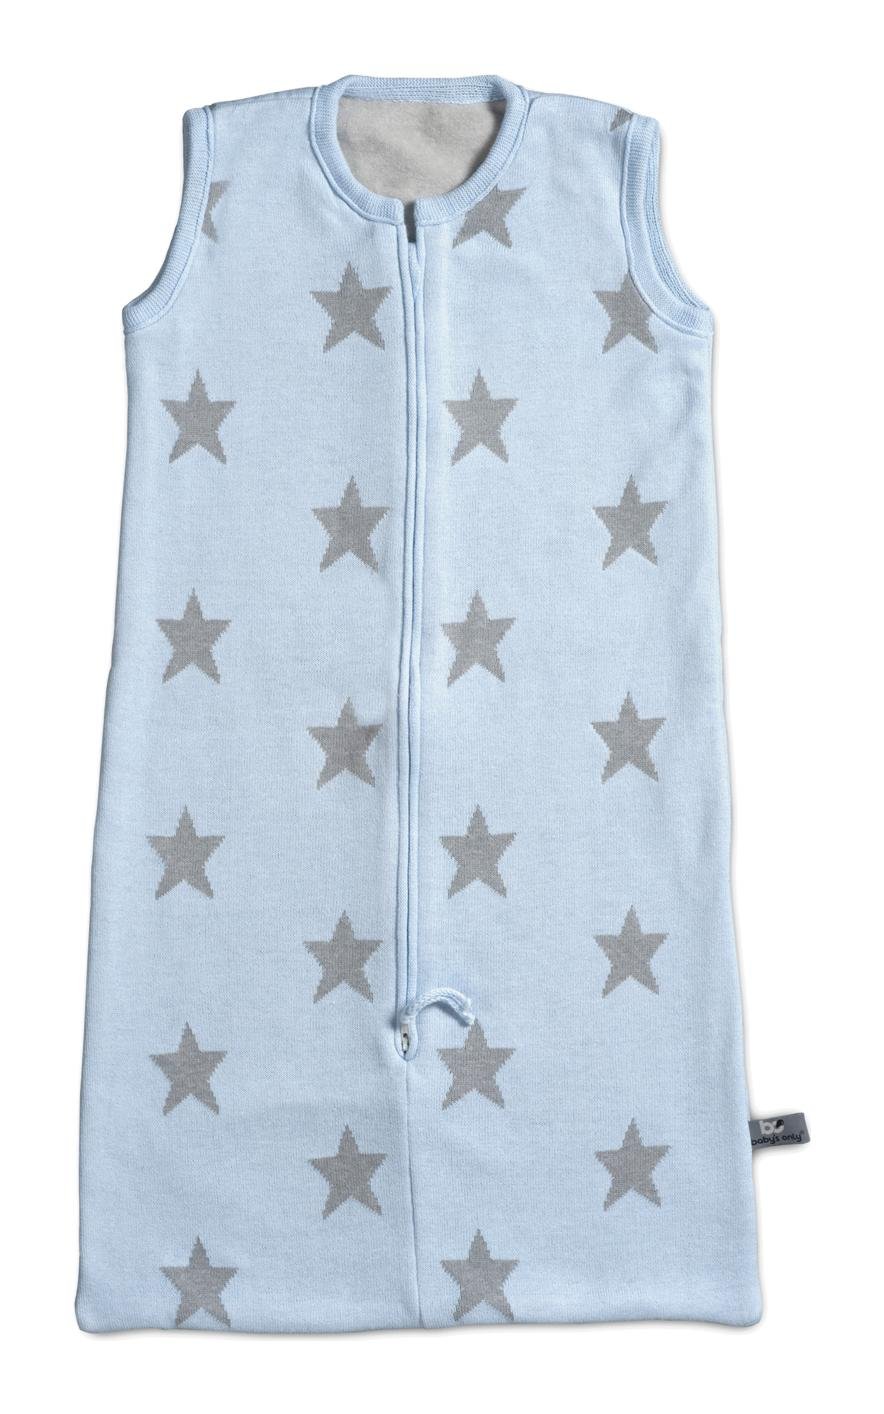 Baby 's Only Luxus gestrickt Baby Schlafsack hellblau mit Licht Grau Sterne & Soft Fleece-Futter